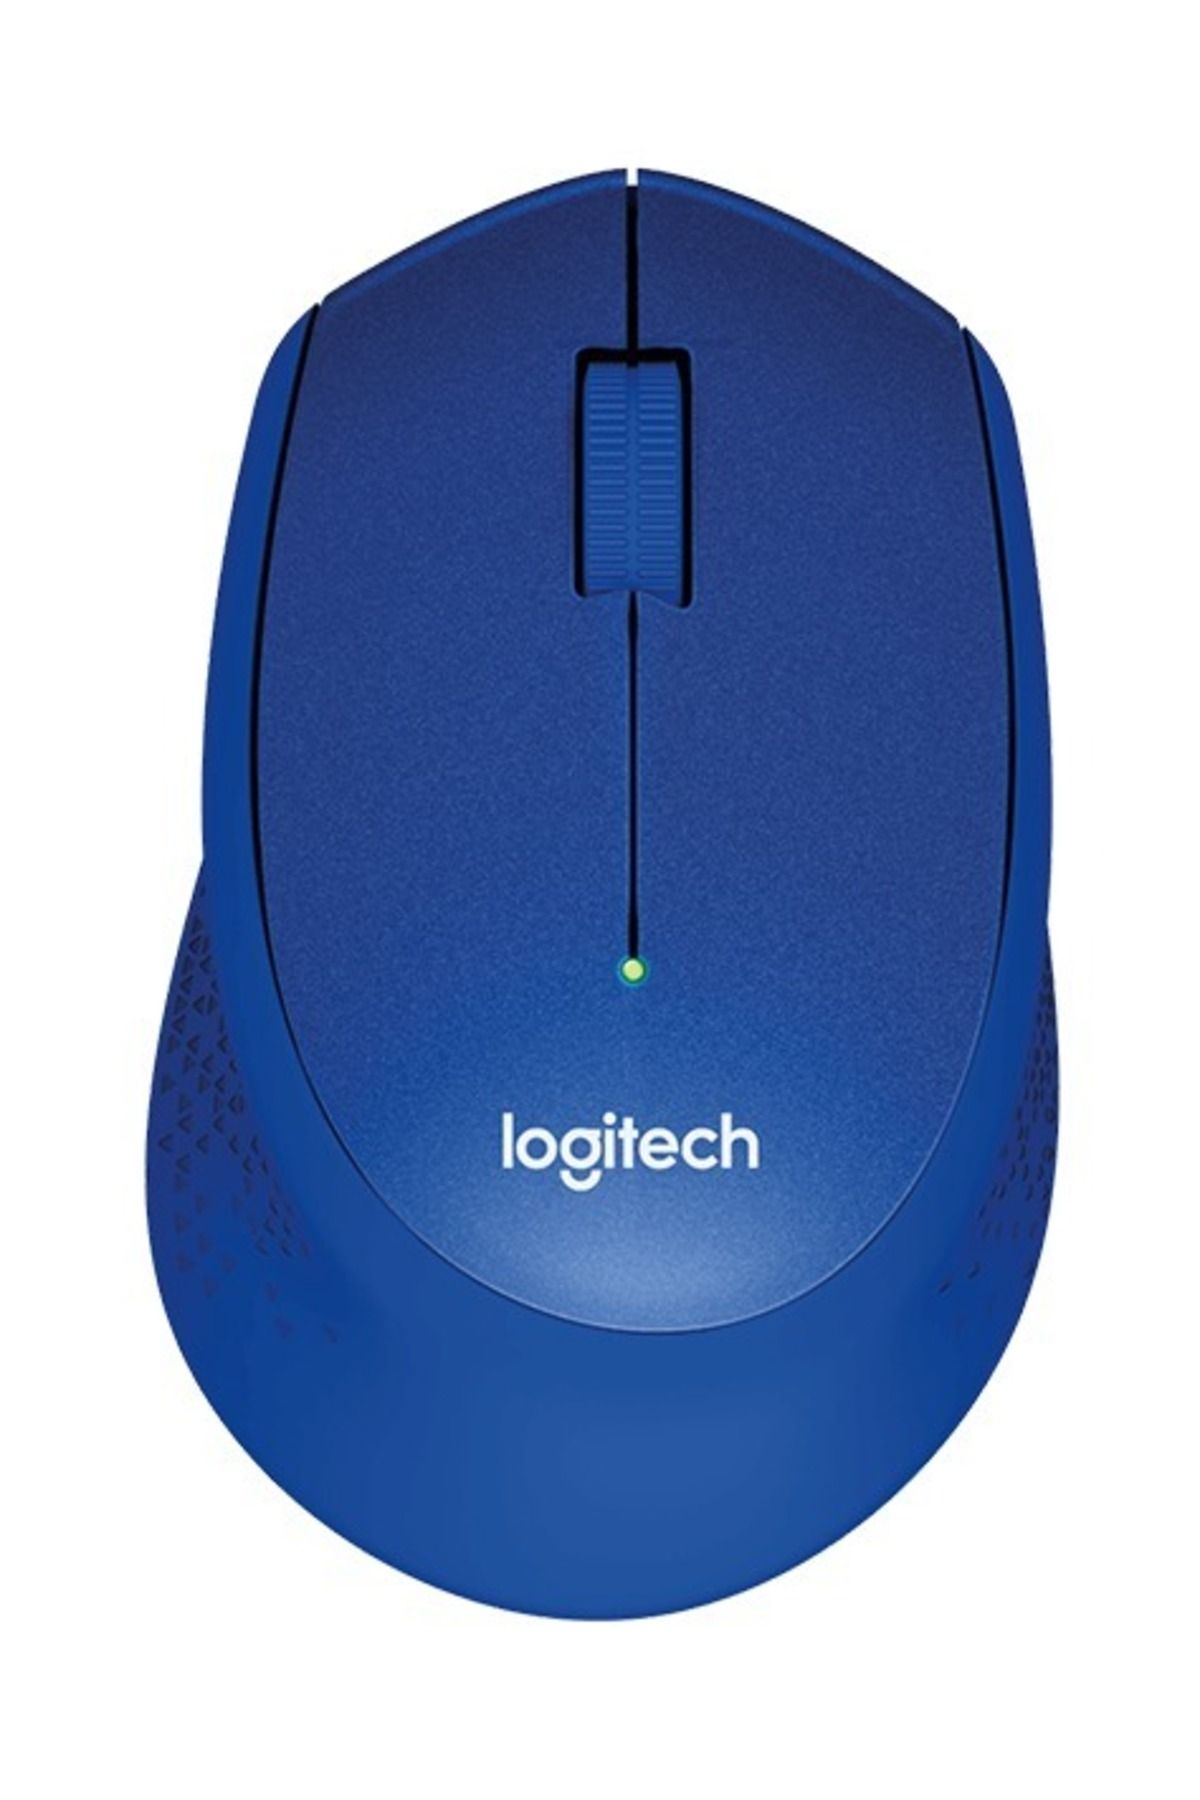 logitech M330 Silent Plus 10000dpı 3 Tuş Optik Mouse - 910-004910